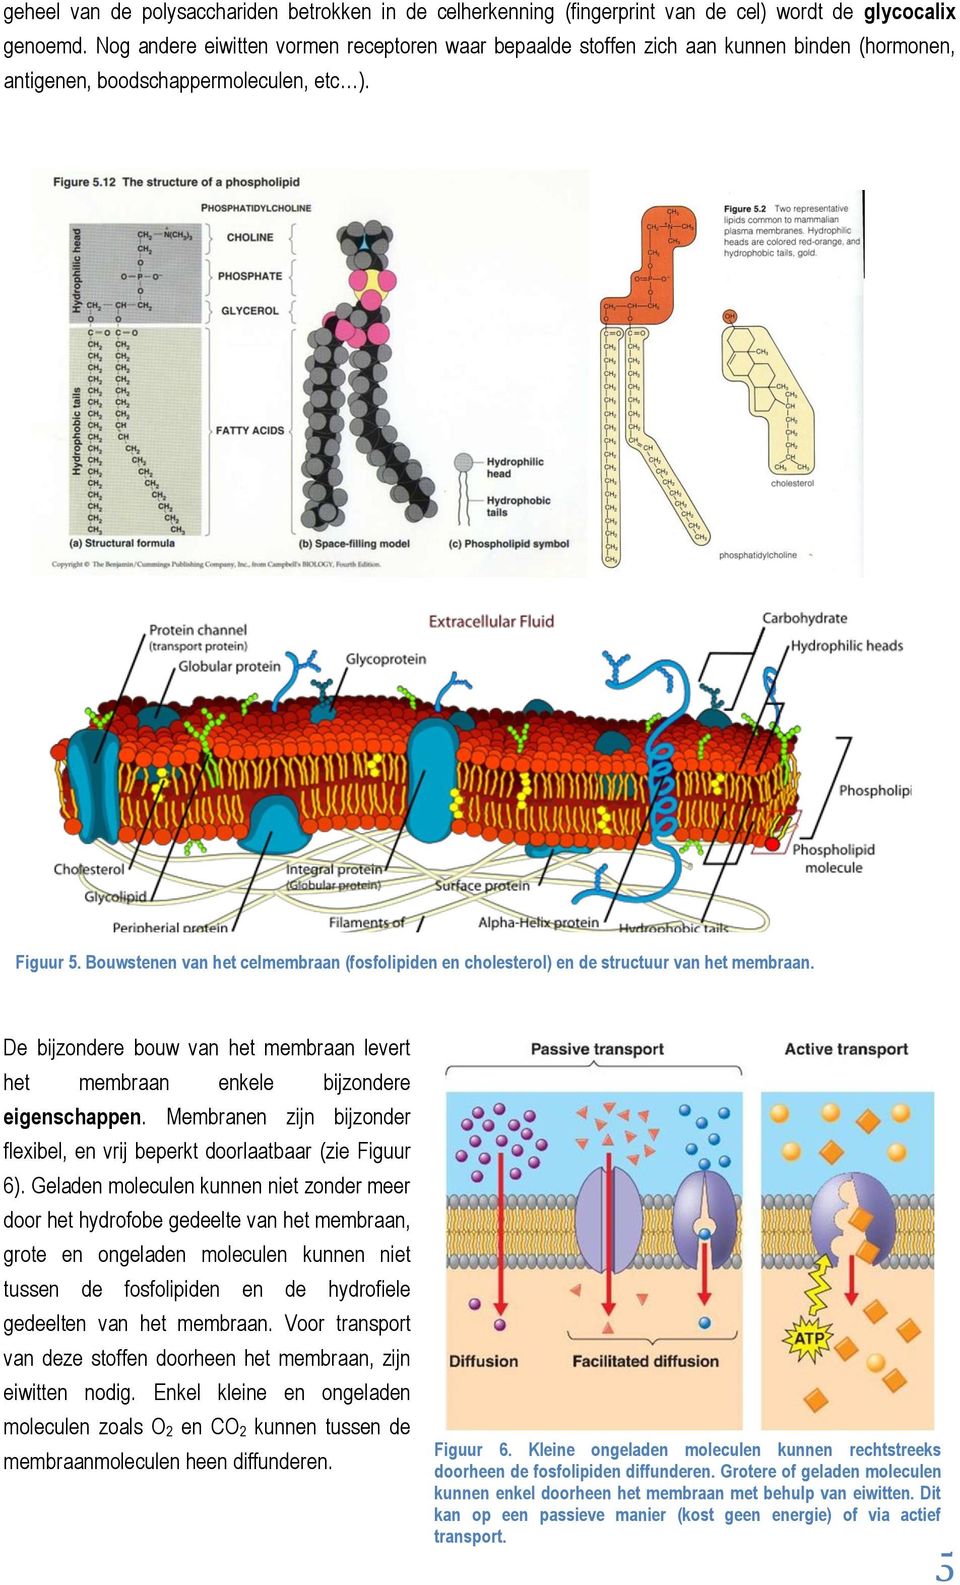 Bouwstenen van het celmembraan (fosfolipiden en cholesterol) en de structuur van het membraan. De bijzondere bouw van het membraan levert het membraan enkele bijzondere eigenschappen.